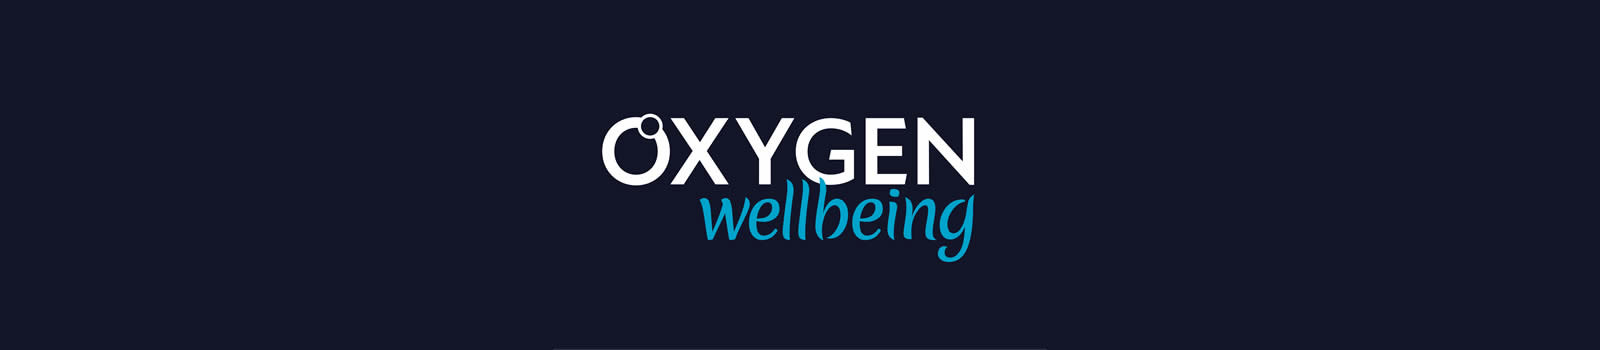 1600x350 Oxygen Wellbeing on dark blue background